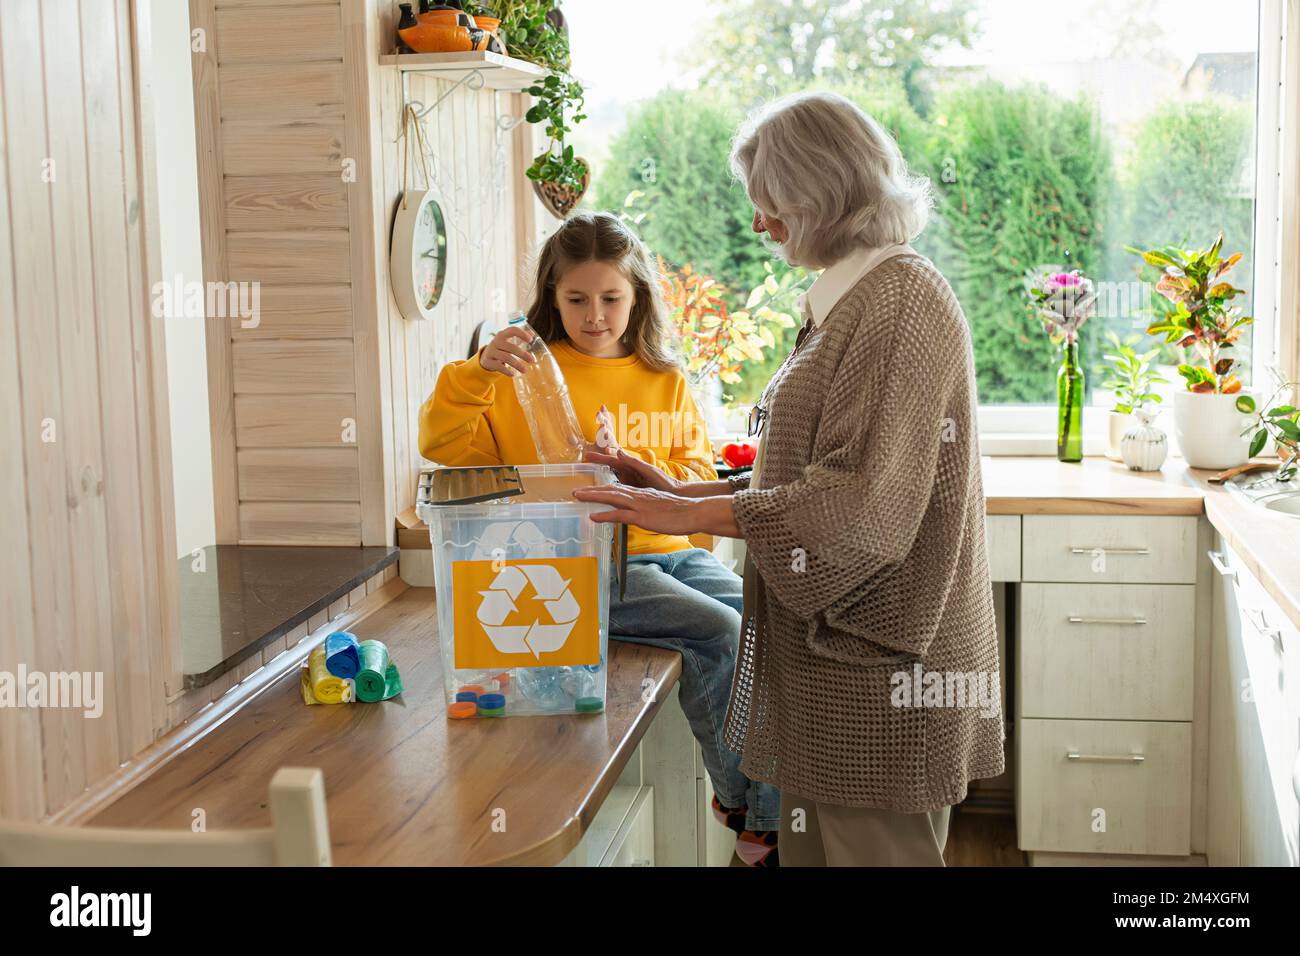 Grand-mère et petite-fille trient les déchets de recyclage dans la cuisine Banque D'Images